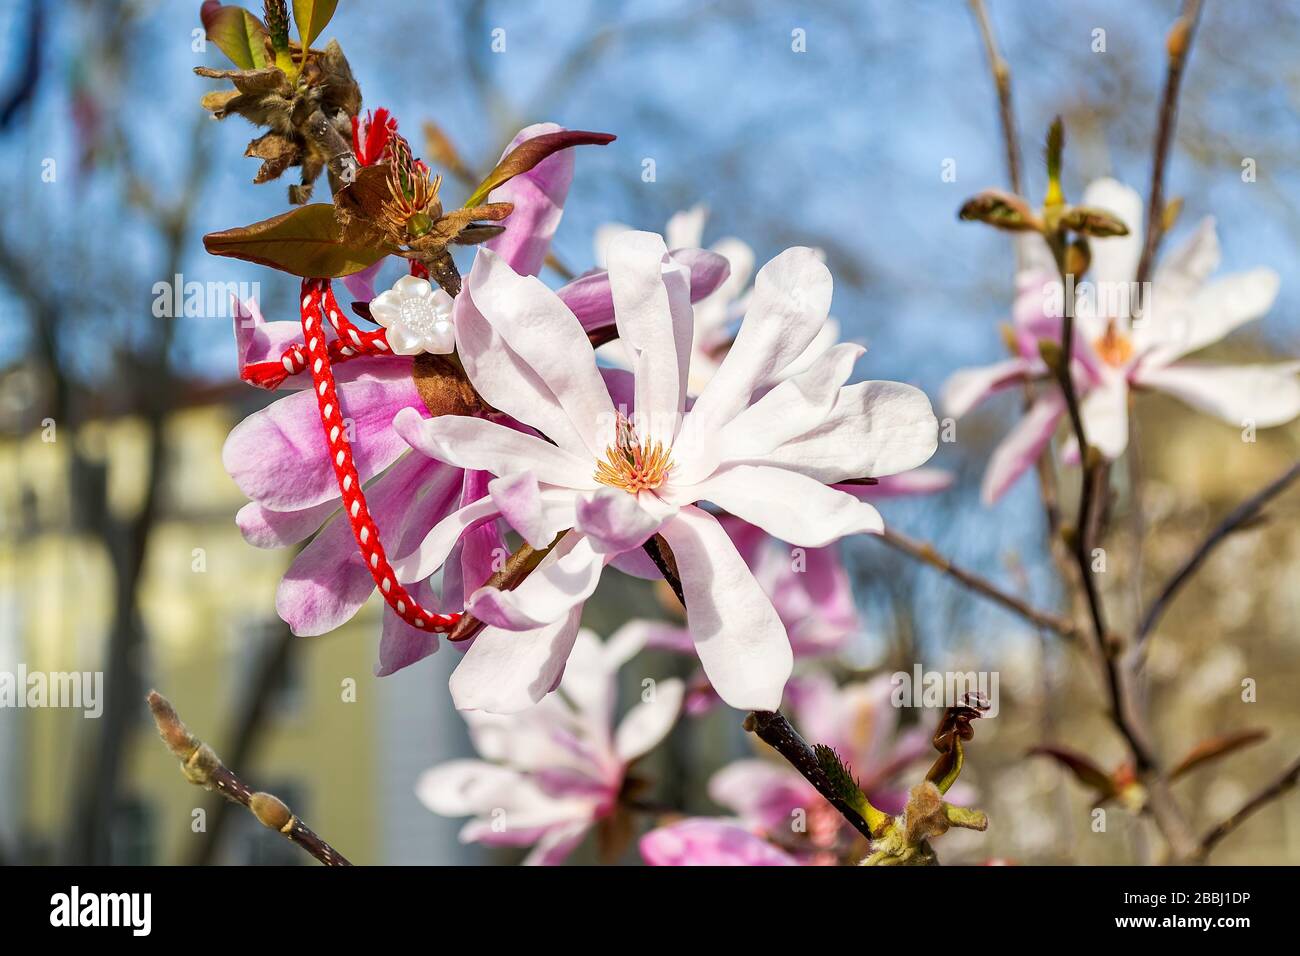 Tradition bulgarische Folklore Amulett Martenitsa in der Nähe der Blume einer blühenden rosaroten magnolie. Balkan-Amulett für Liebe, Glück, Gesundheit und Schutz vor dem Bösen. Stockfoto